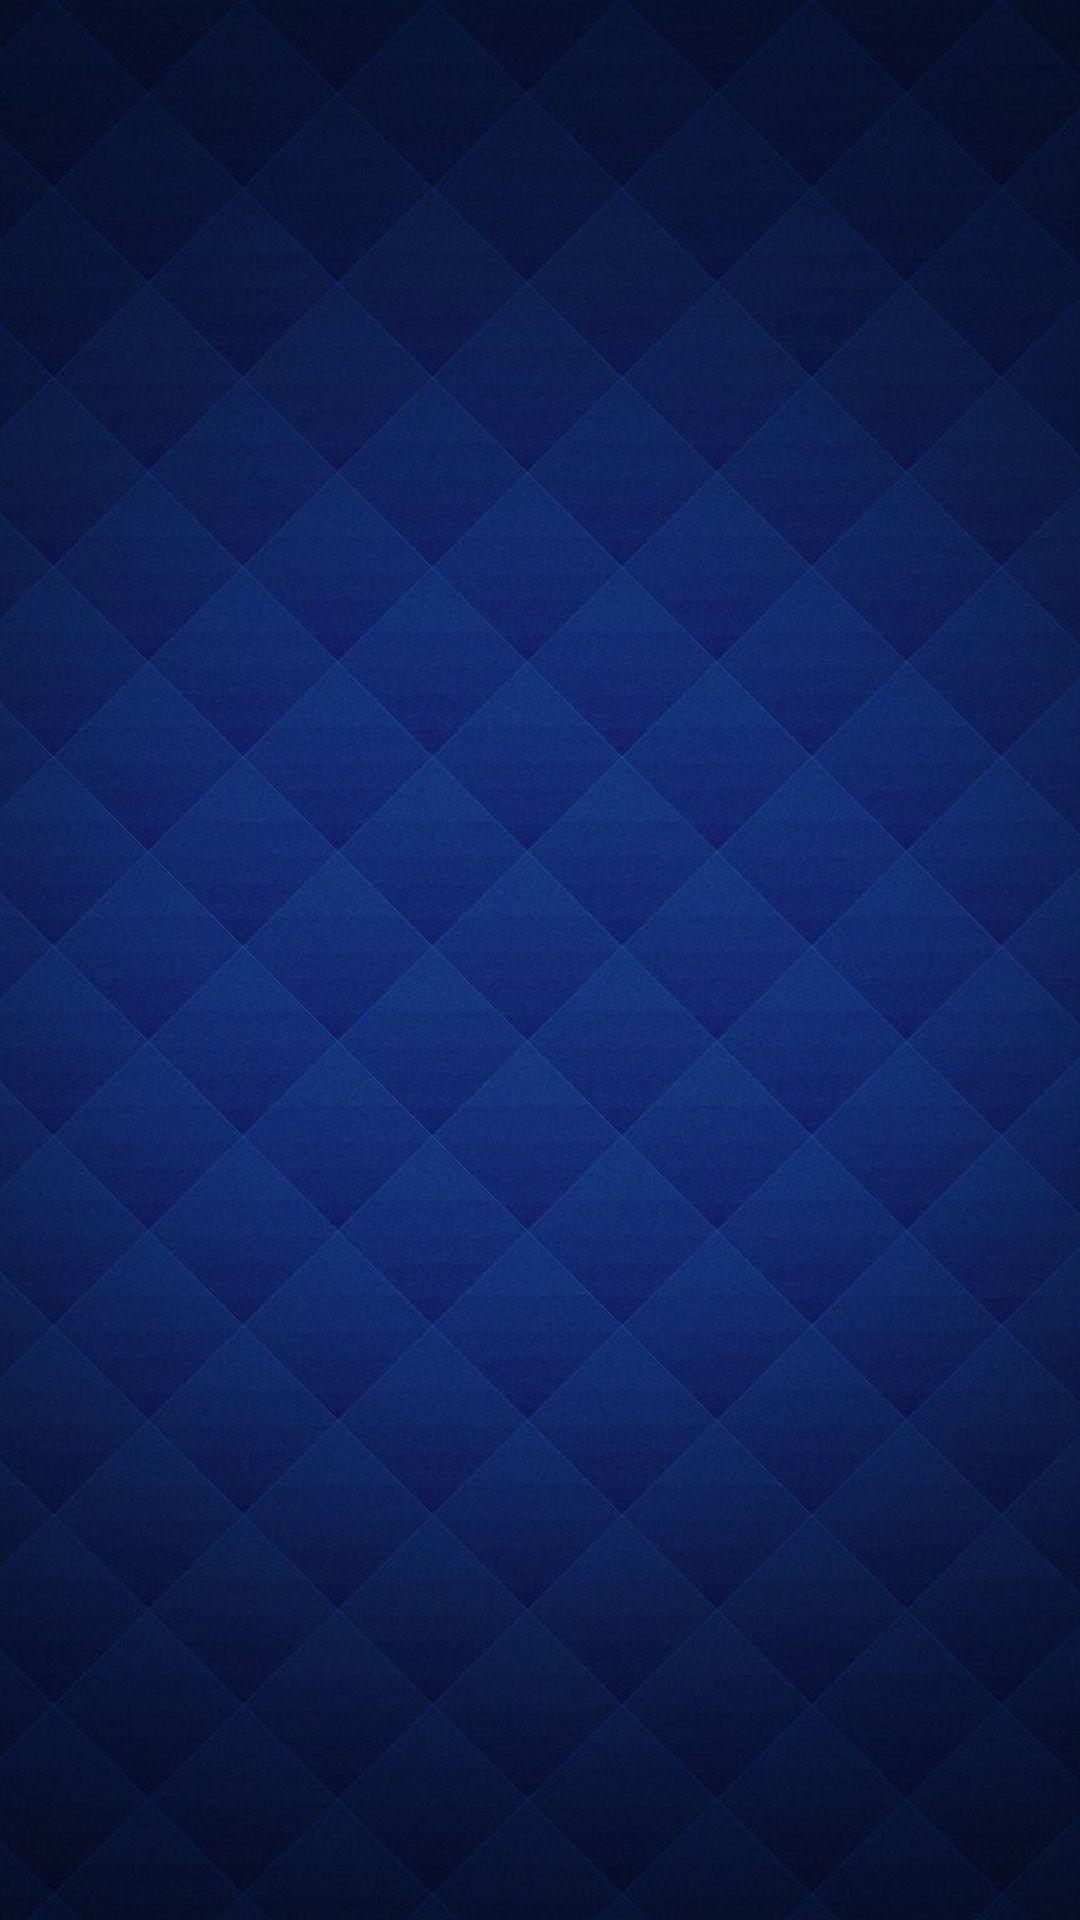 Blue Tartan Wallpaper